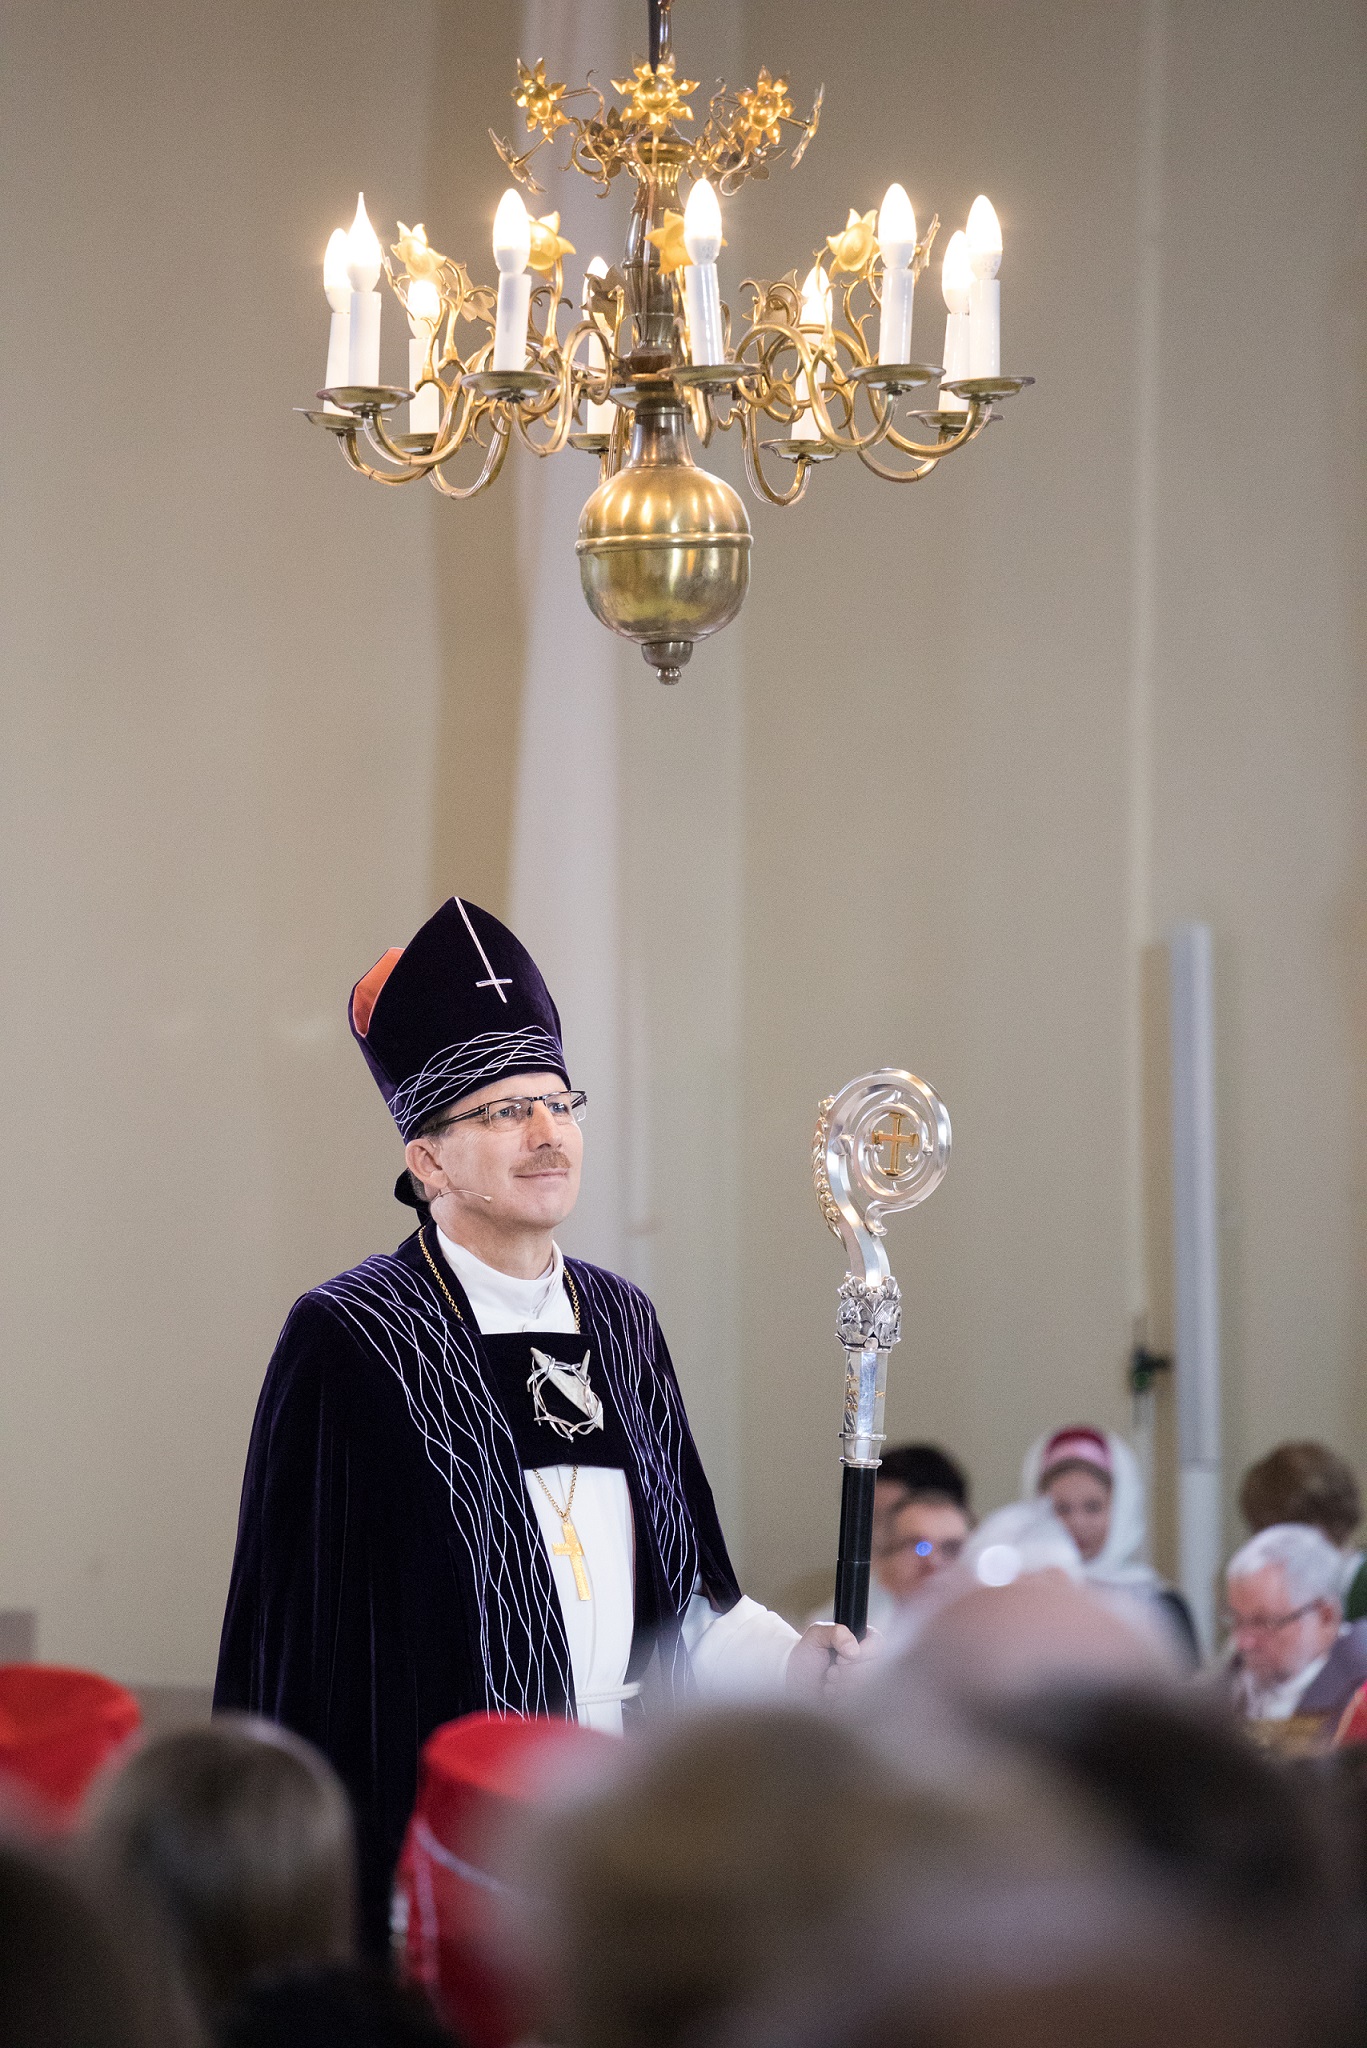 Piispa Jukka Keskitalo Oulun tuomiokirkossa. Kuva Sanna Krook.